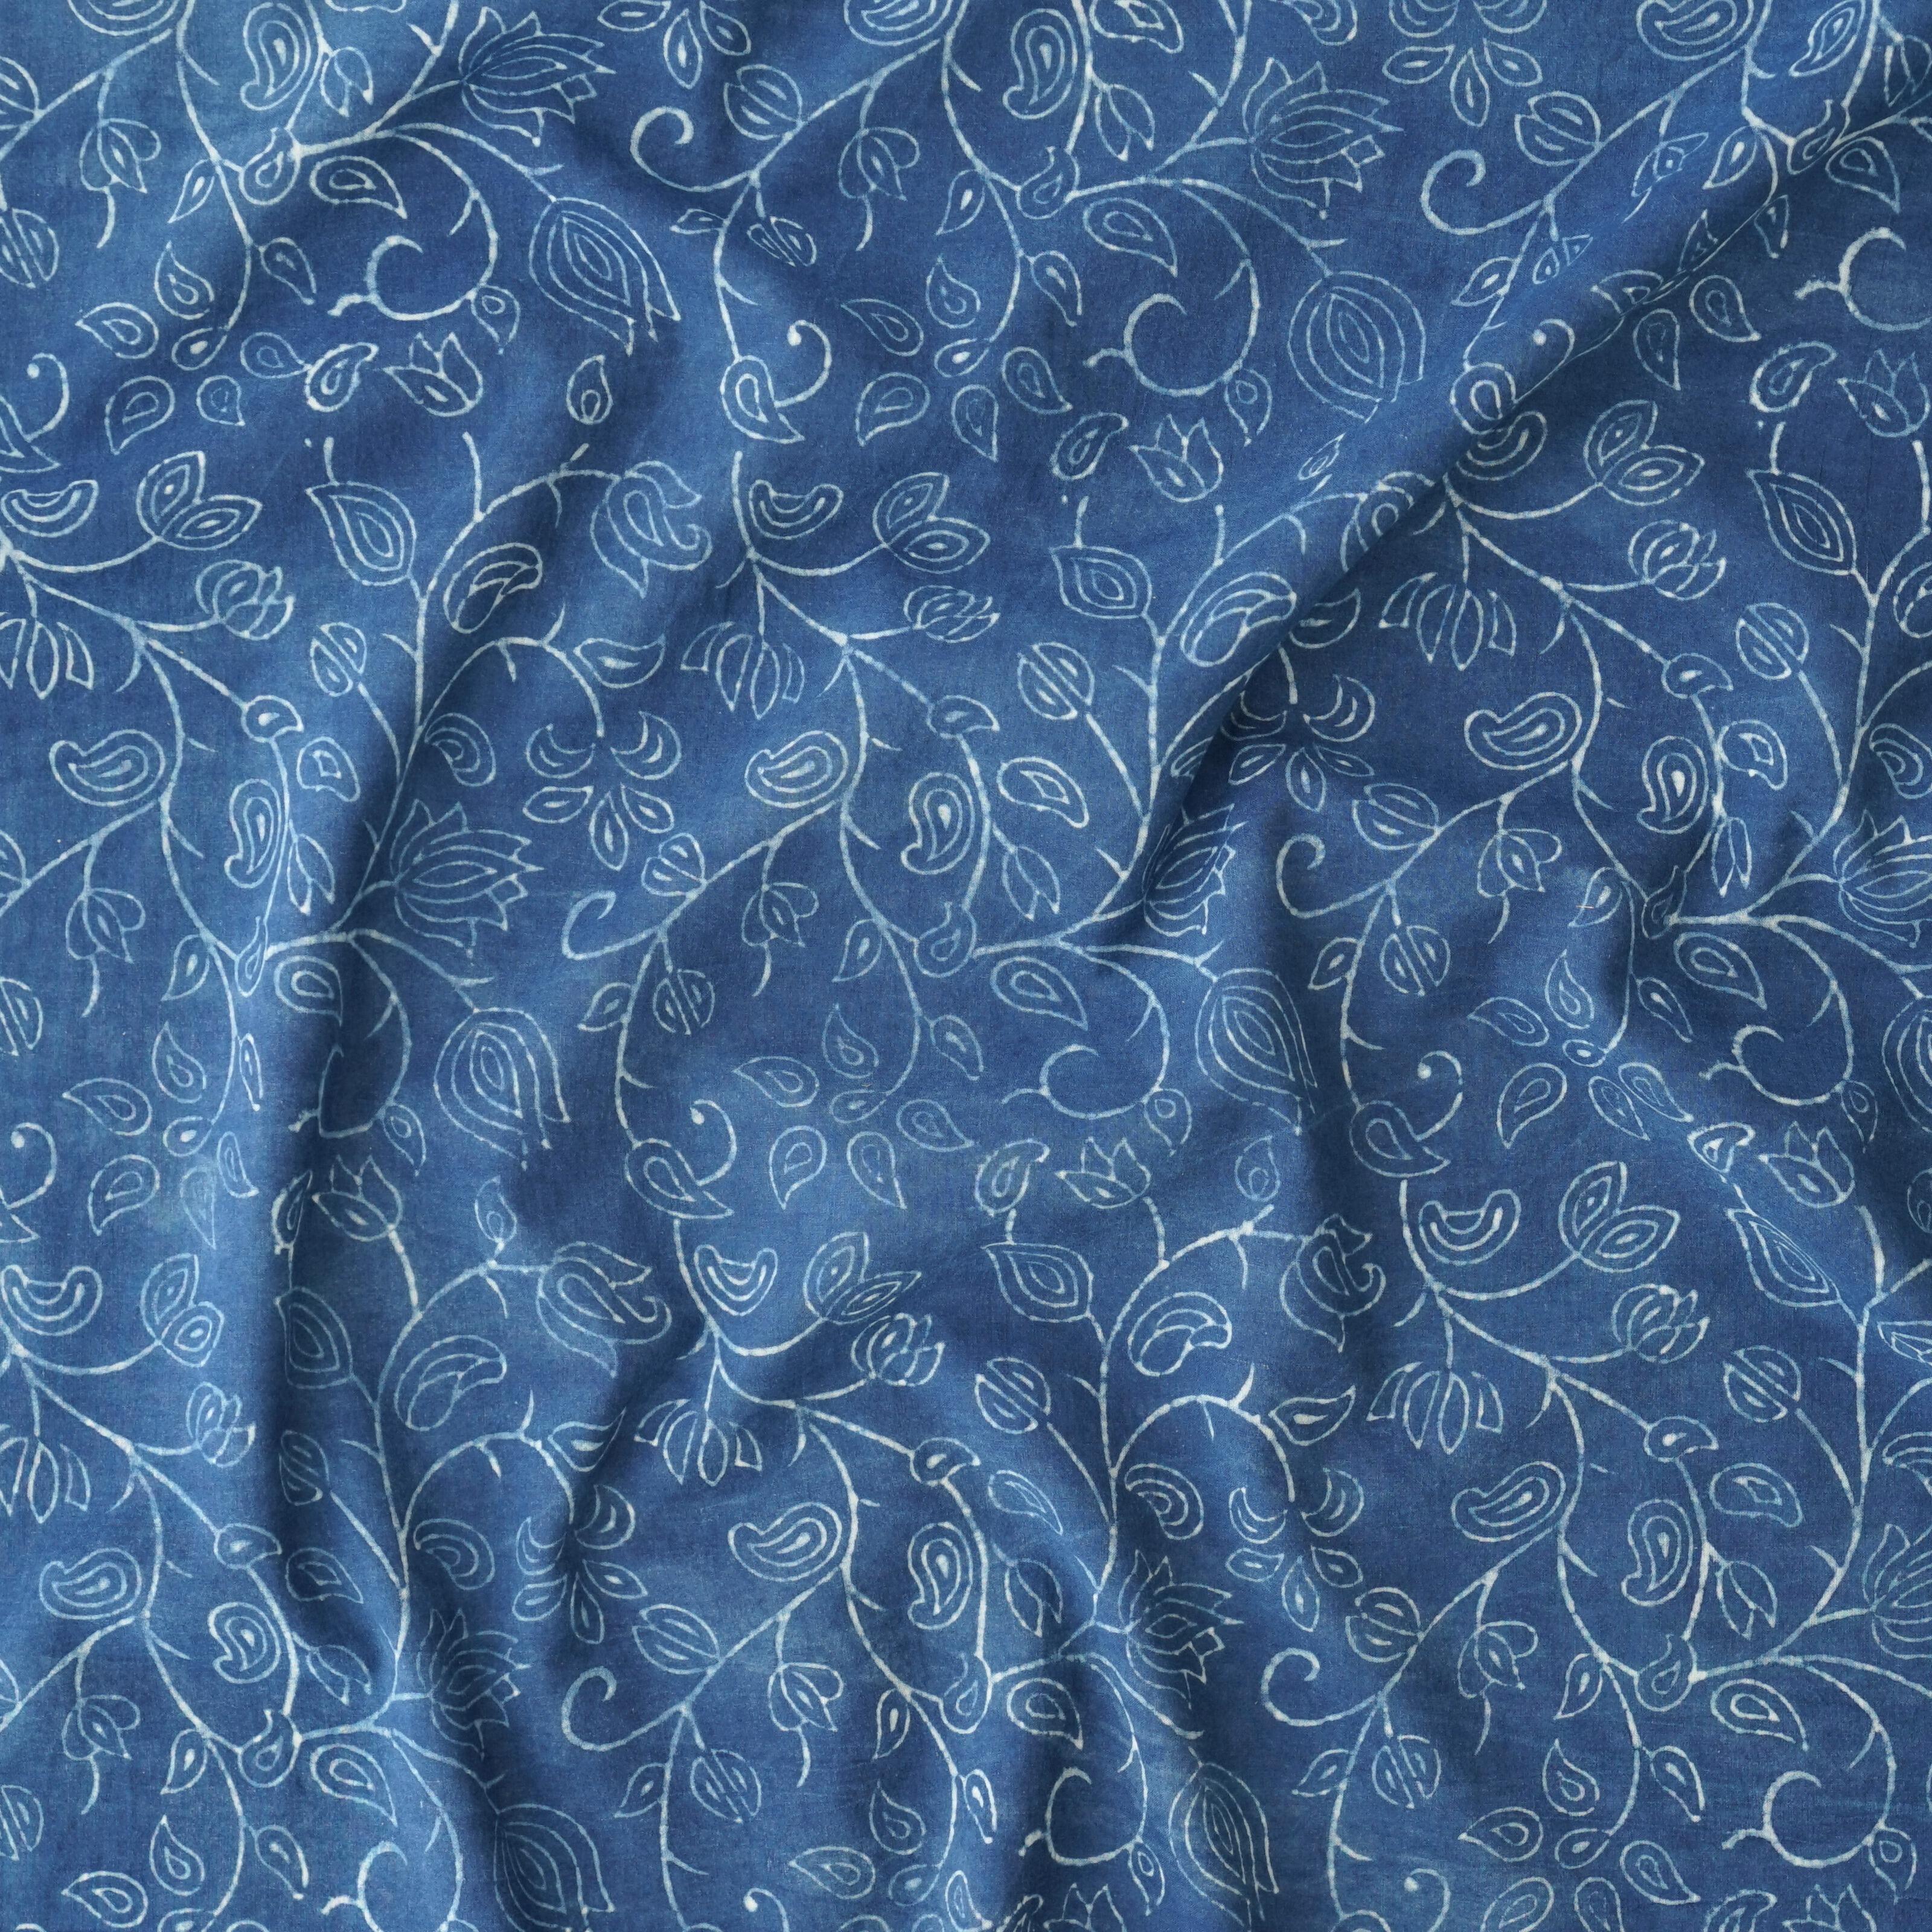 Block-Printed Cotton - Flowering Azure Print - Indigo Dyed - Contrast